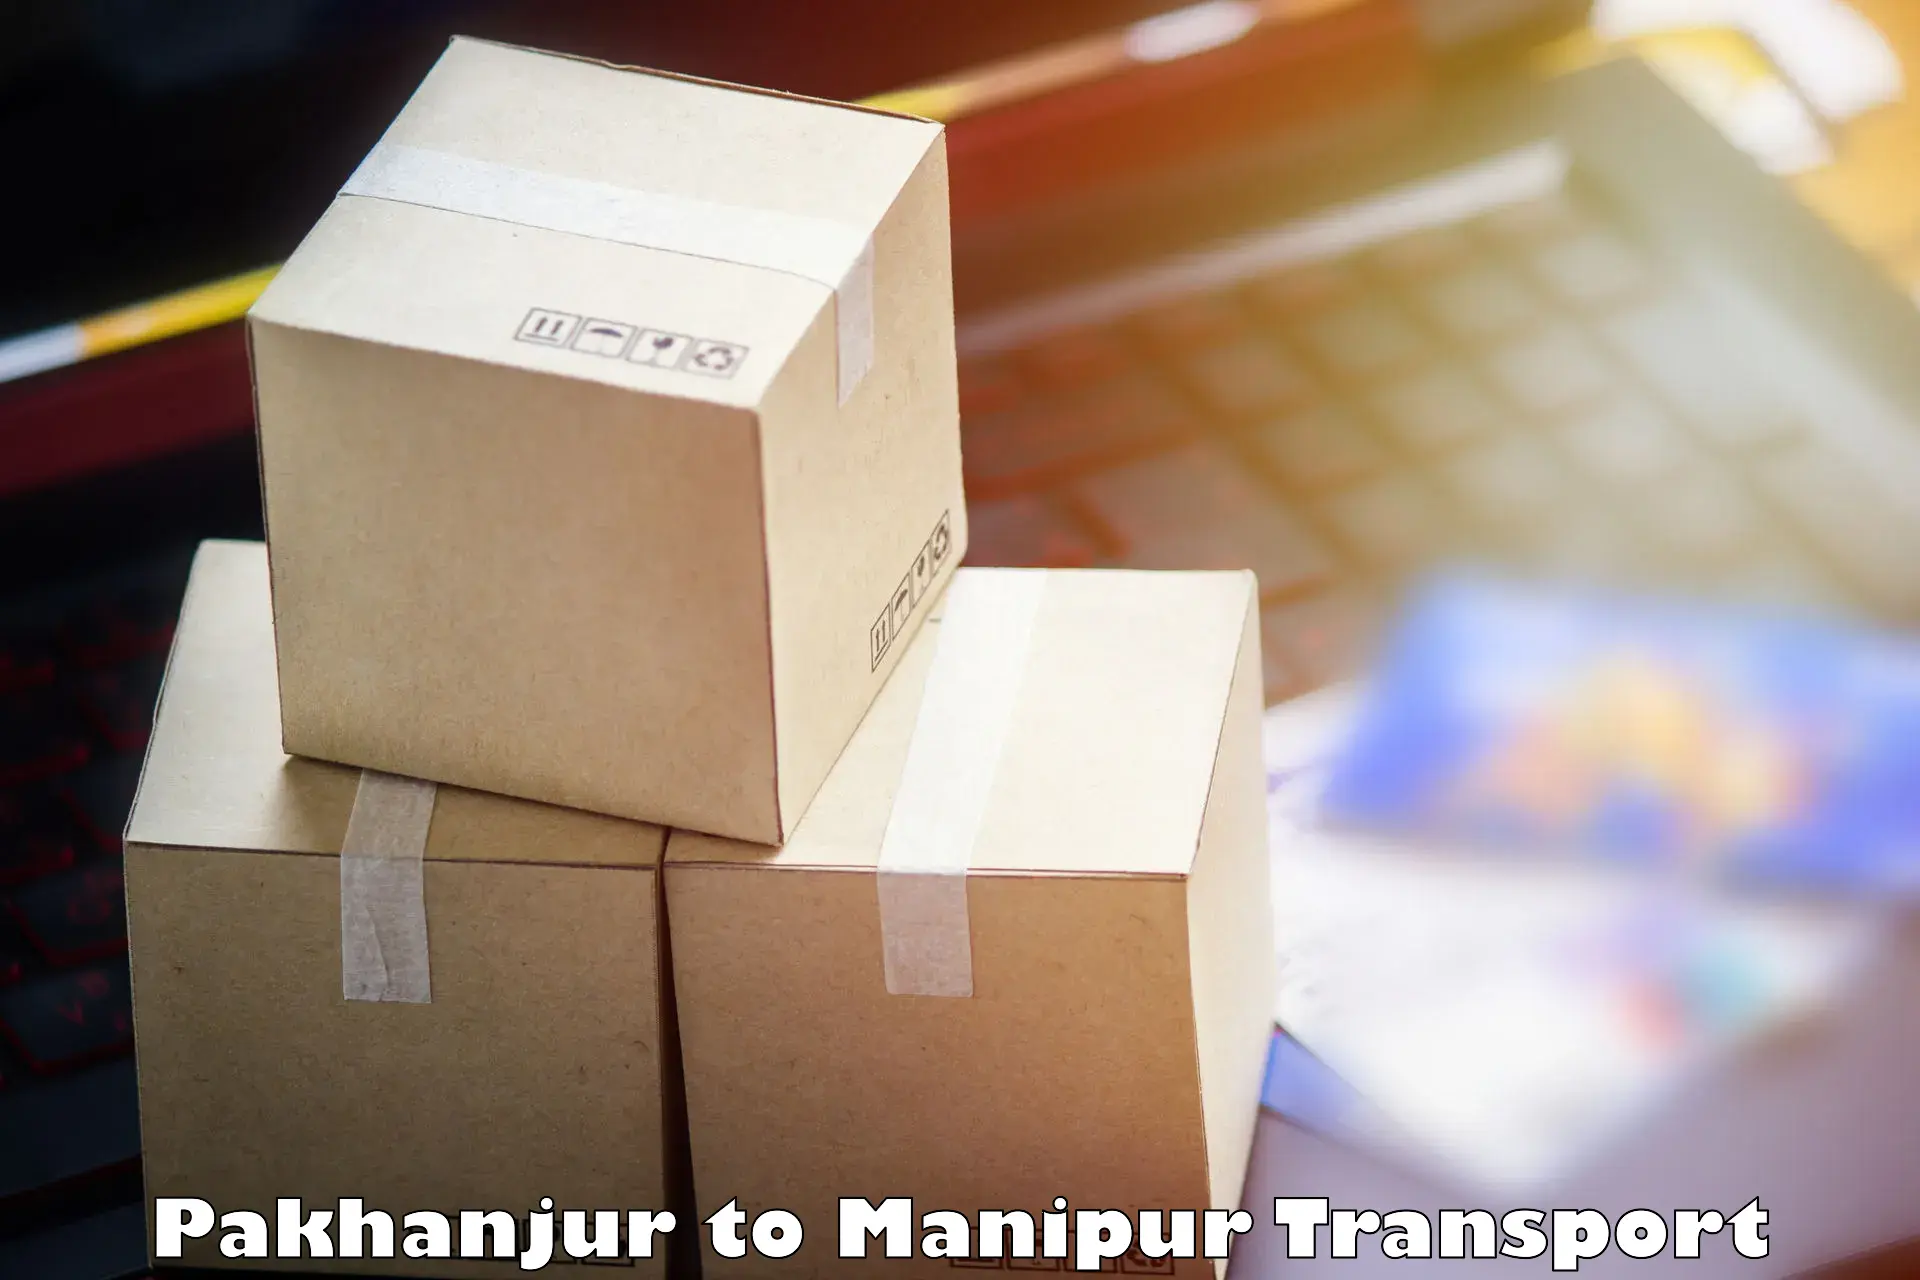 Cargo transport services Pakhanjur to Manipur